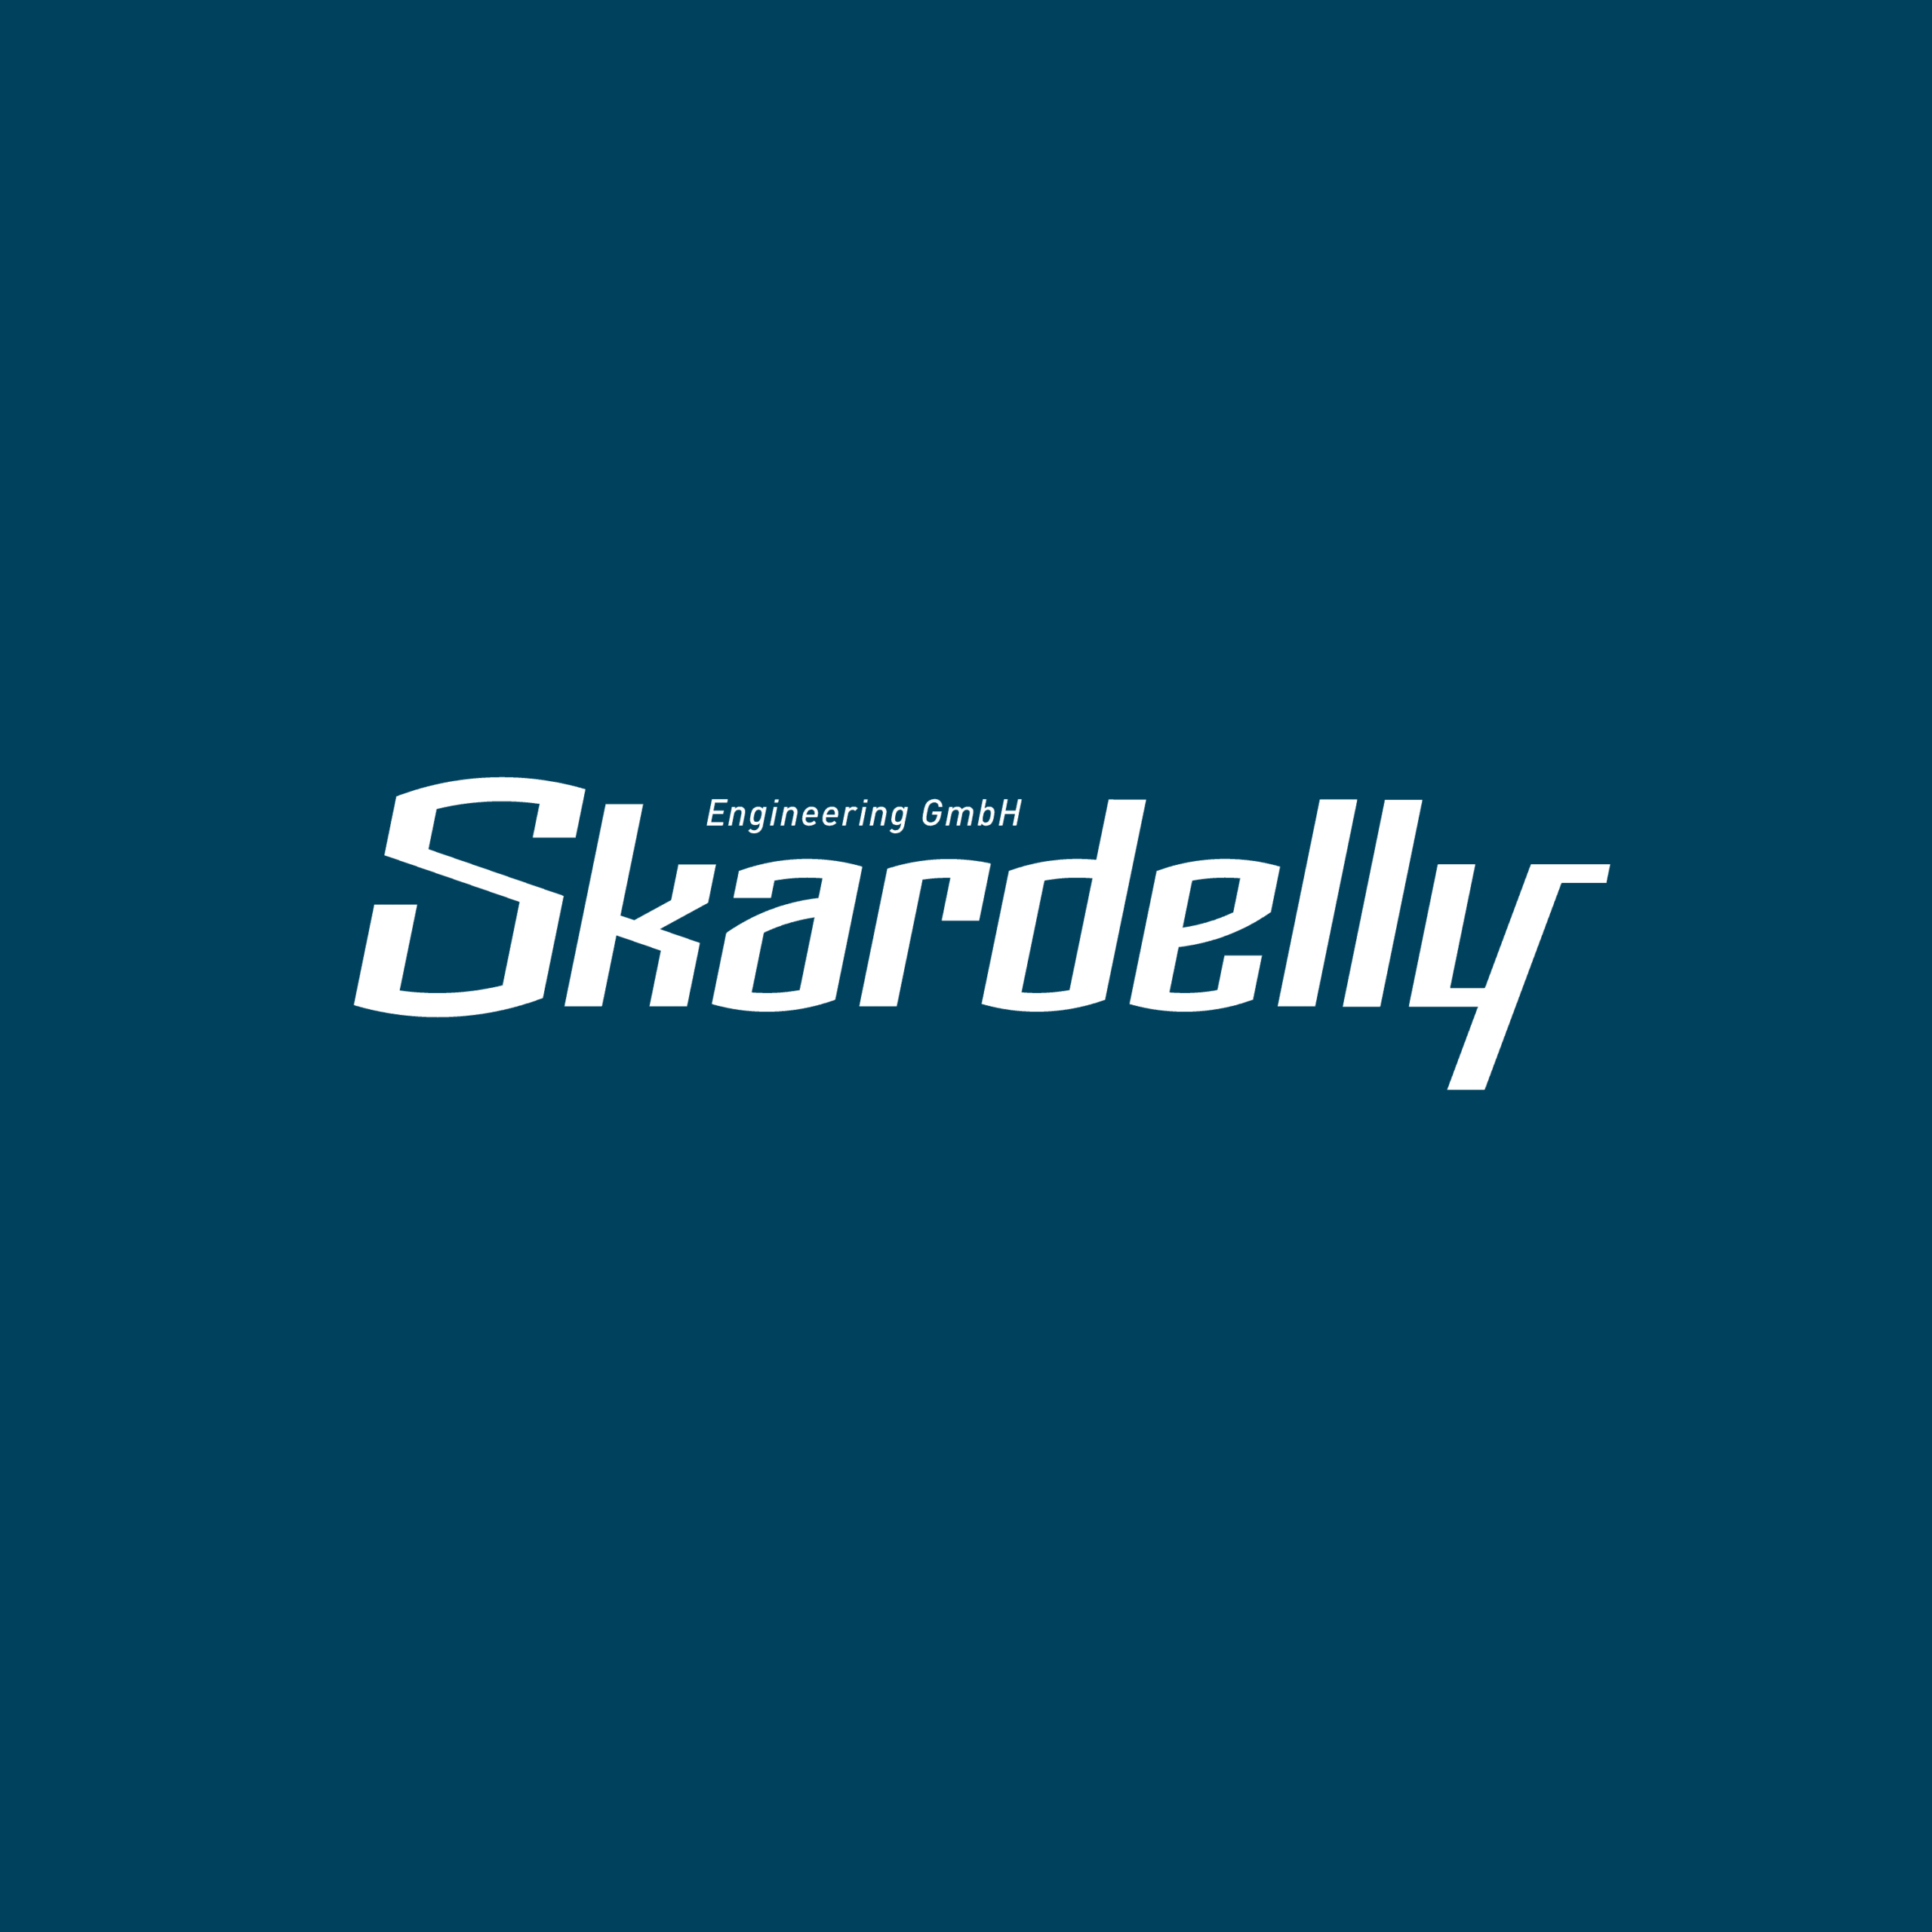 Logotype → Skardelly Engineering GmbH, 2015